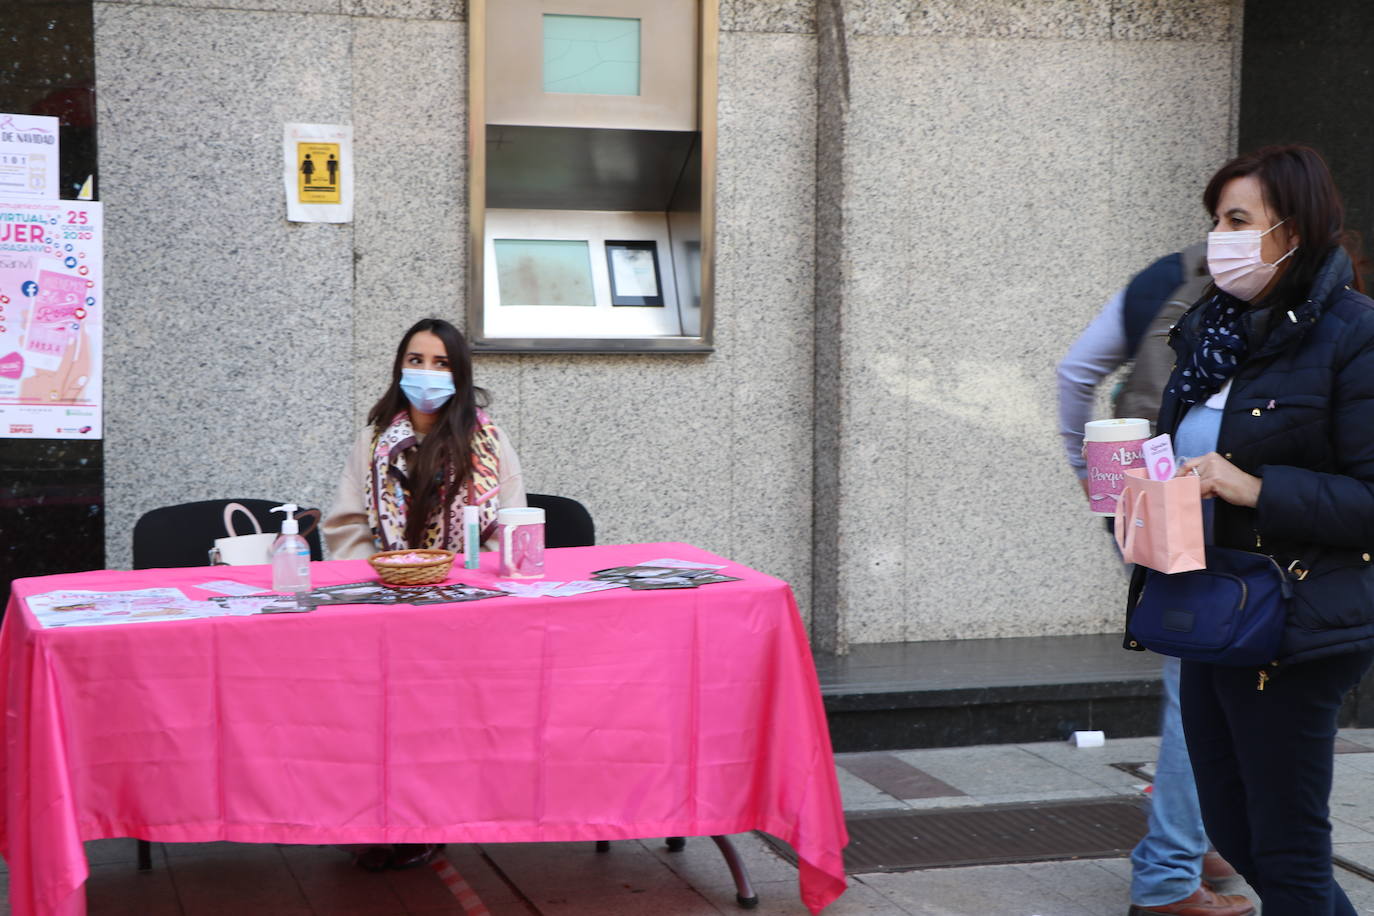 Las calles de León acogen diferentes mesas petitorias en las que se solicita un donativo contra el cáncer de mama.